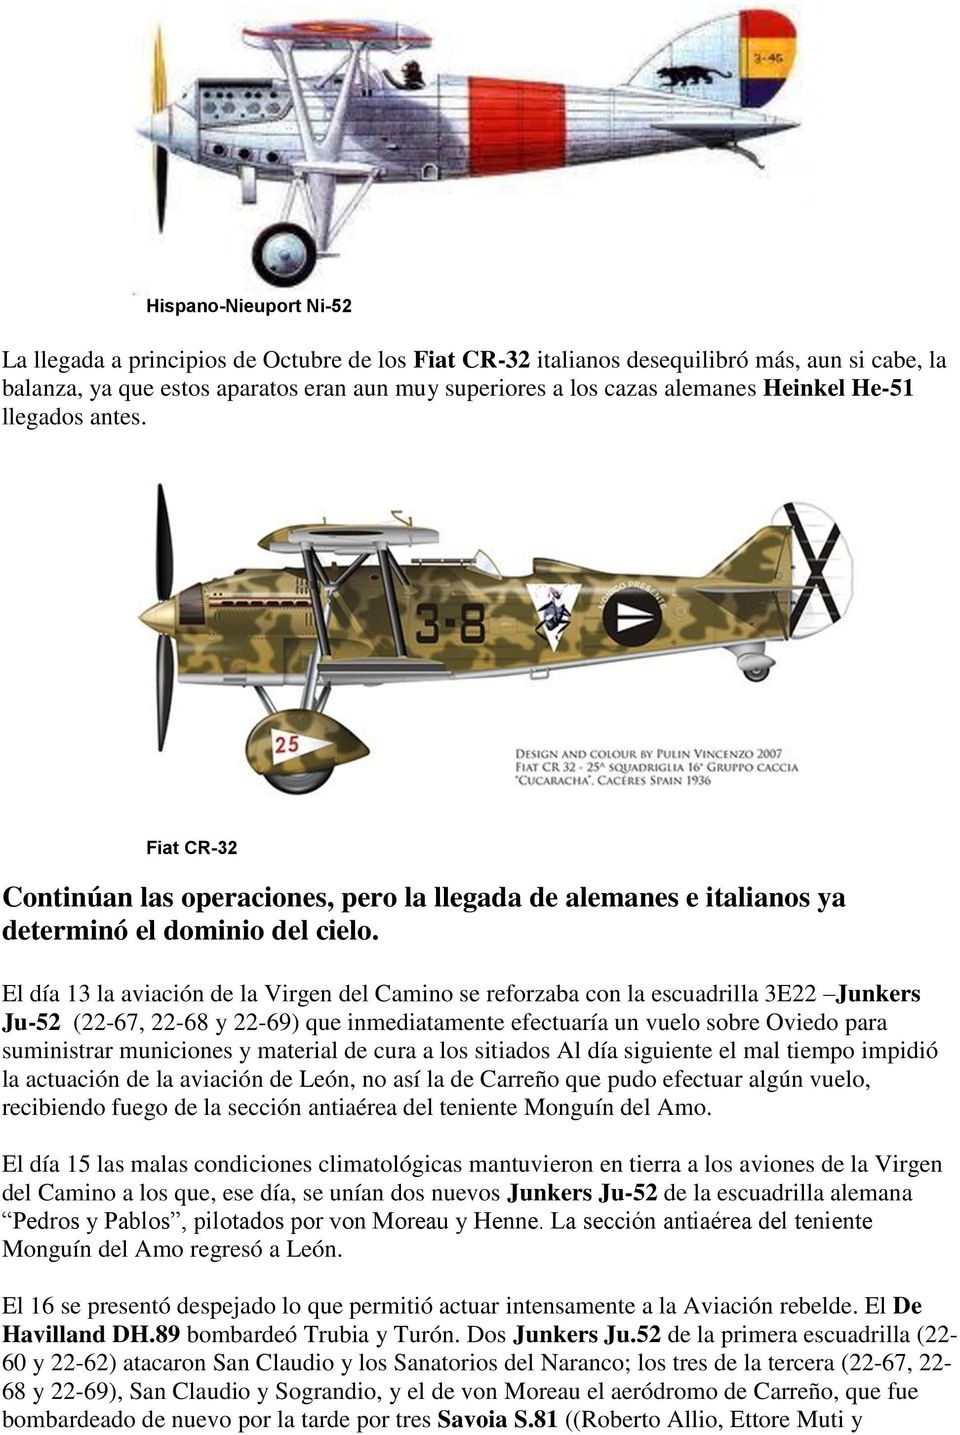 El día 13 la aviación de la Virgen del Camino se reforzaba con la escuadrilla 3E22 Junkers Ju-52 (22-67, 22-68 y 22-69) que inmediatamente efectuaría un vuelo sobre Oviedo para suministrar municiones